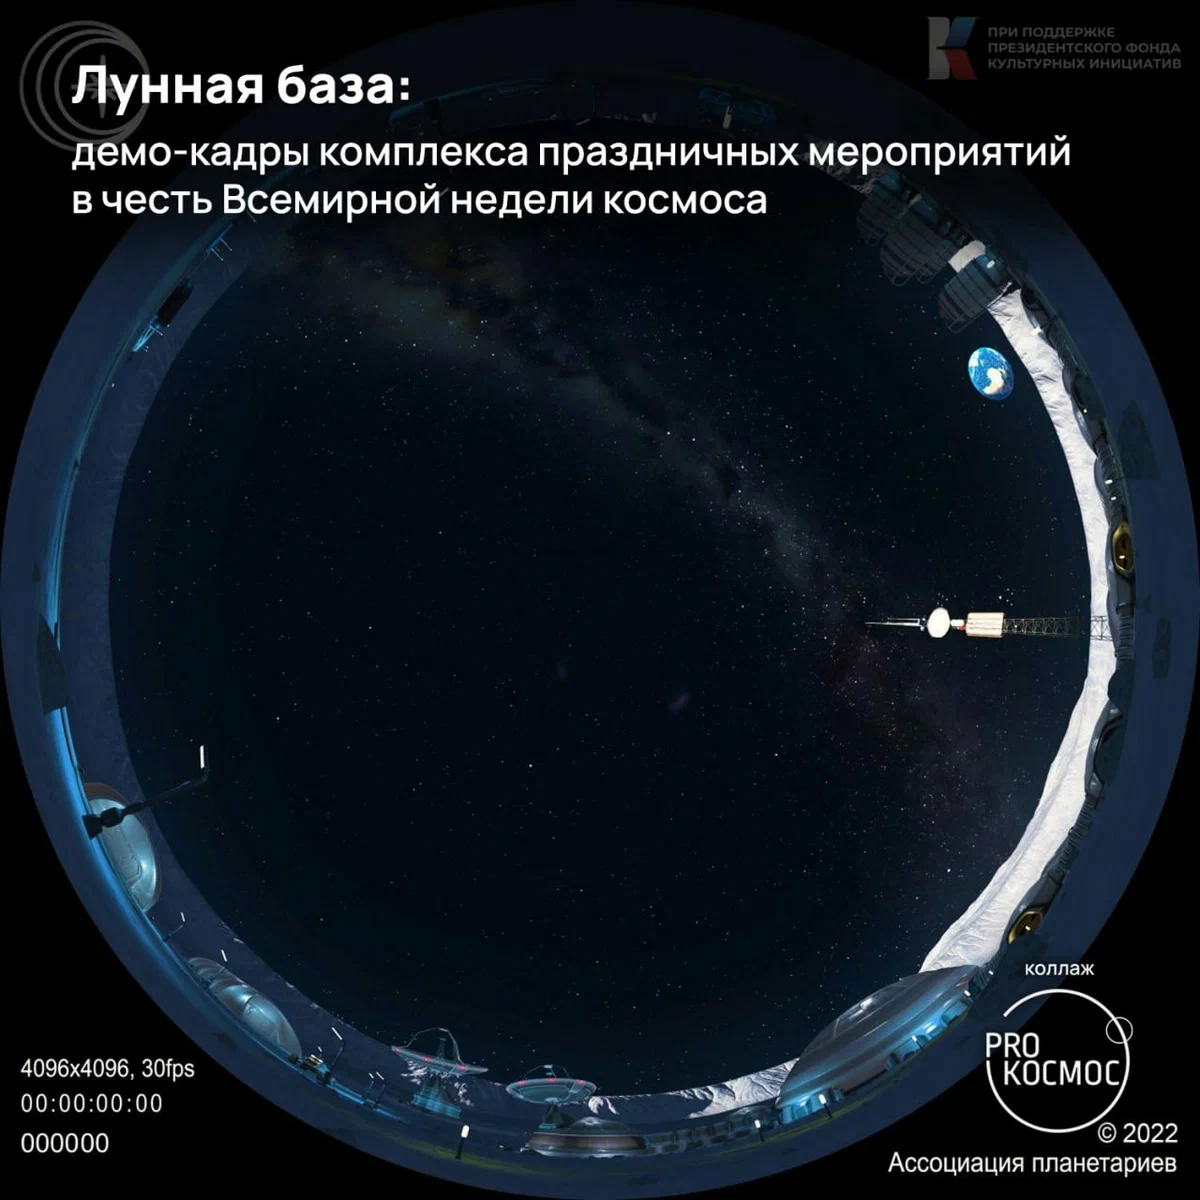 Ежегодная неделя космоса: как «Спутник-1» и спустя 65 лет вдохновляет новых мечтателей height=1200px width=1200px